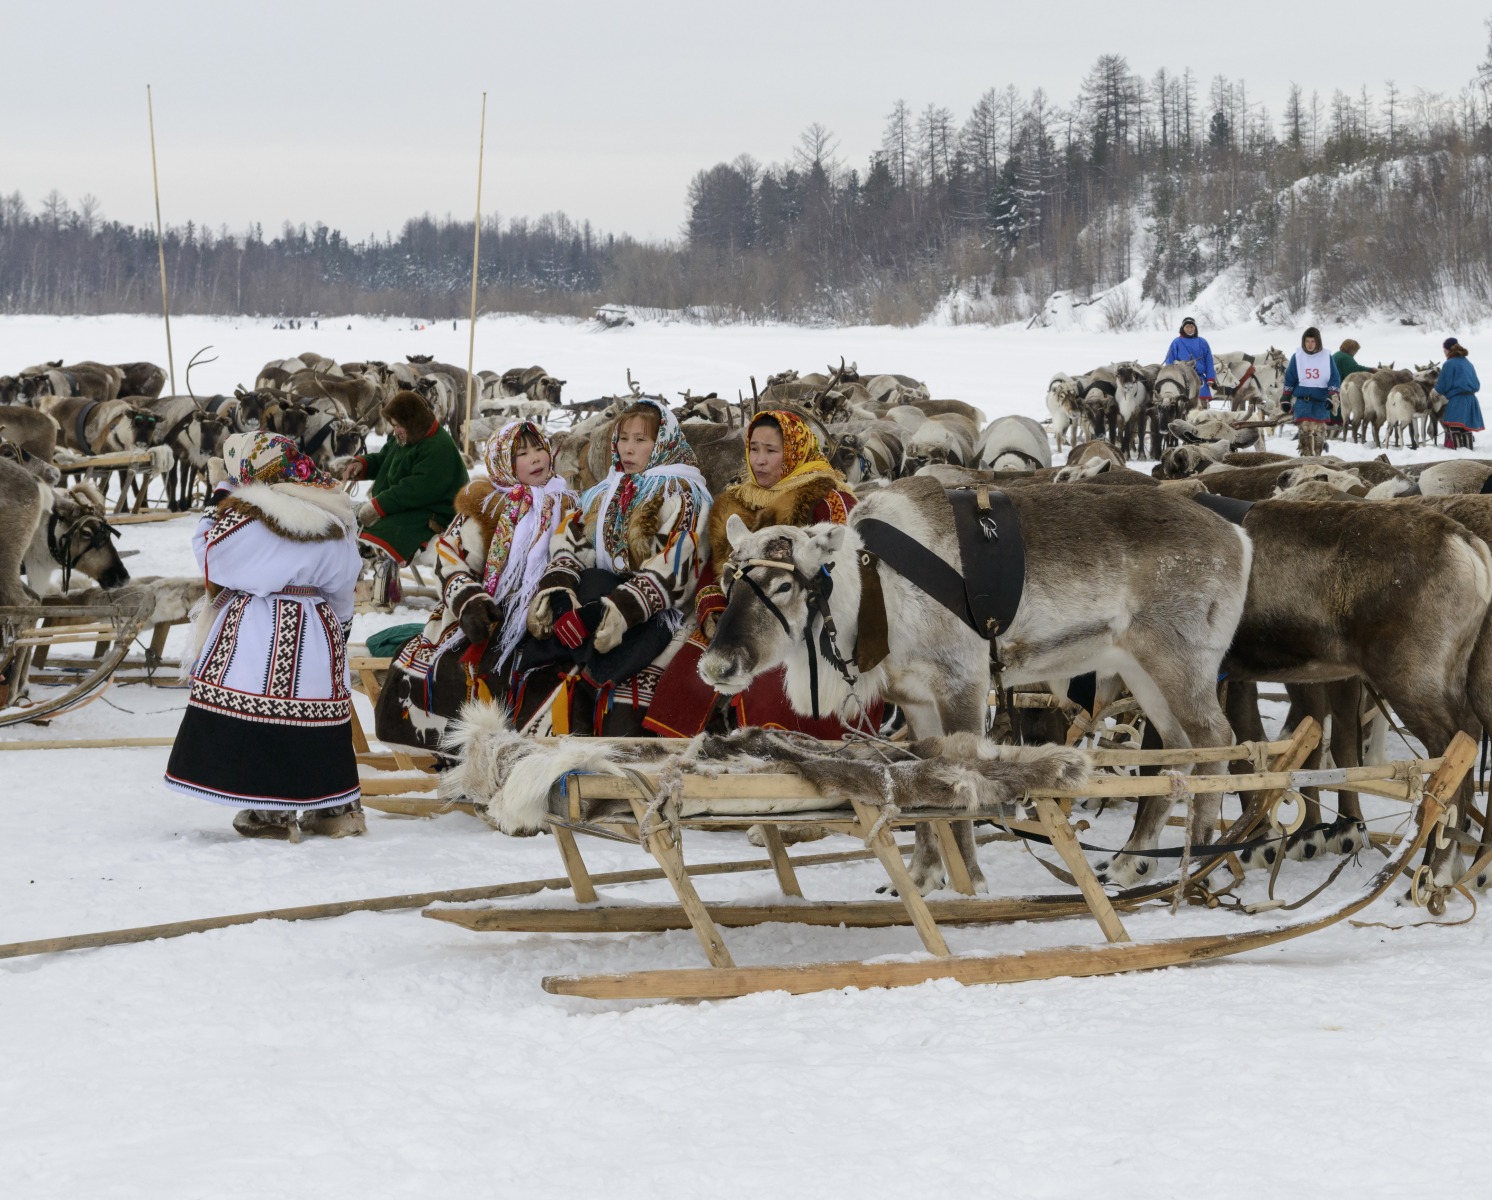 Nenets reindeer herders' festival in the Yamal-Nenets Autonomous Region